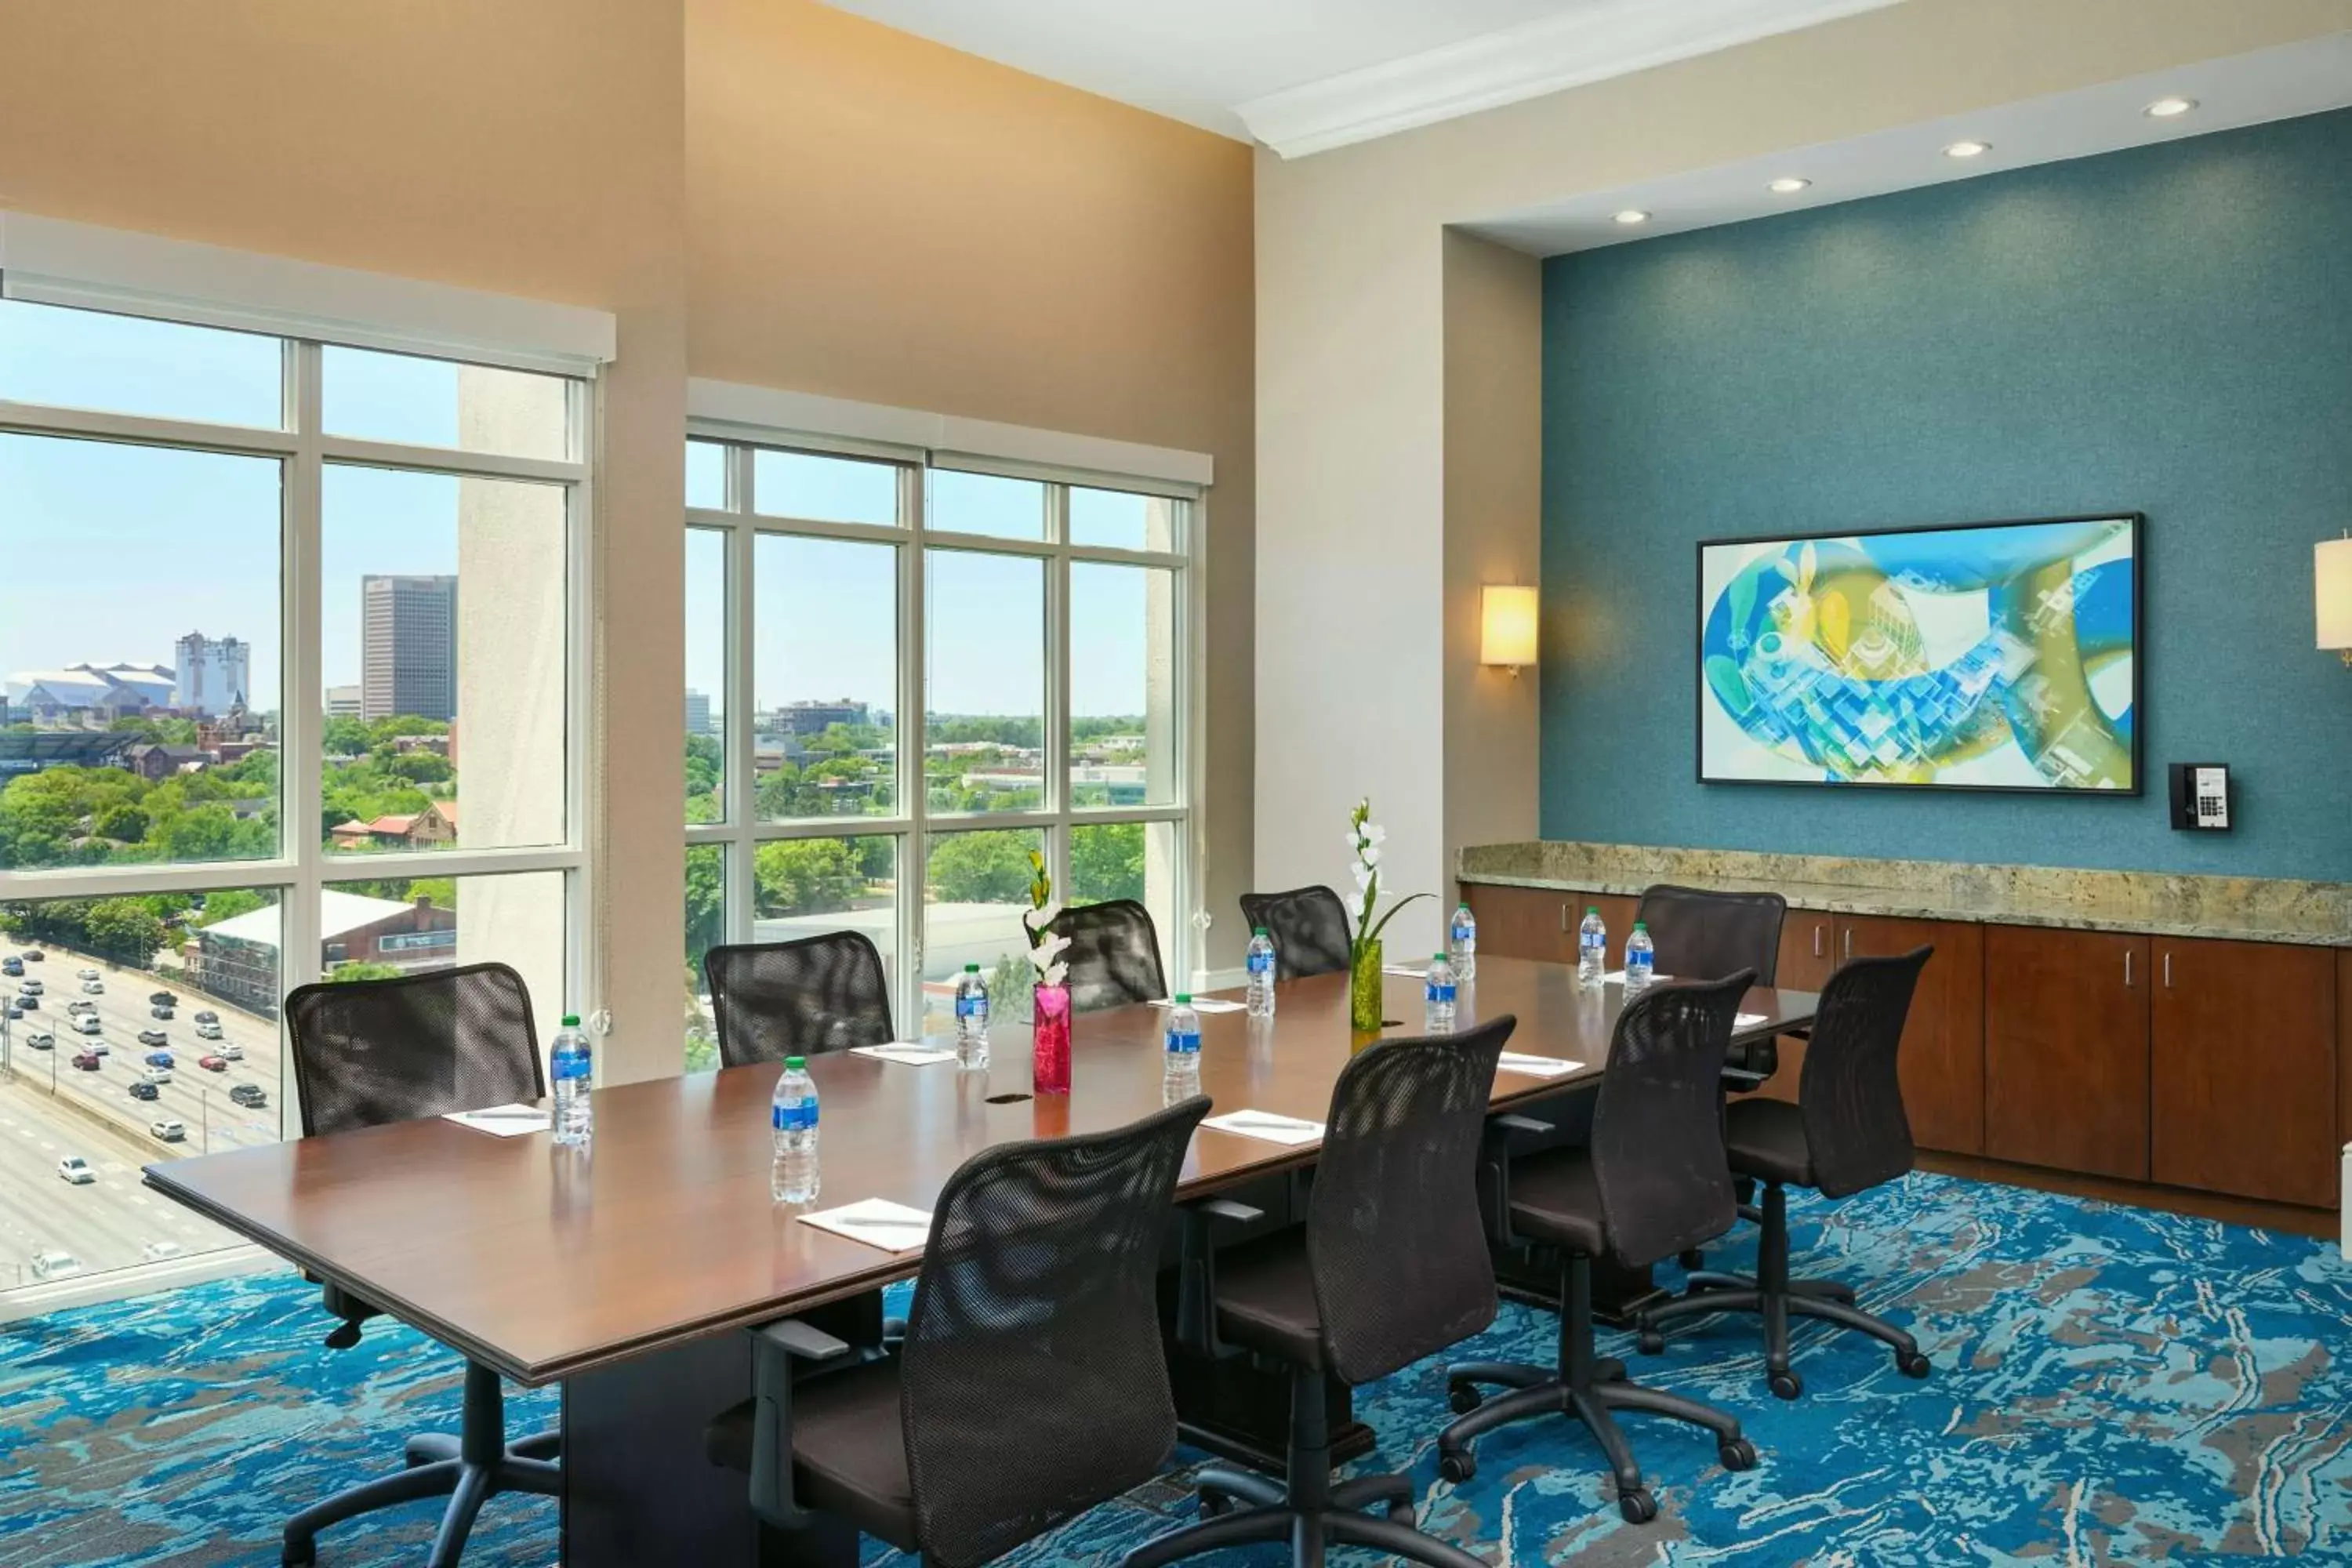 Meeting/conference room in Homewood Suites Atlanta Midtown